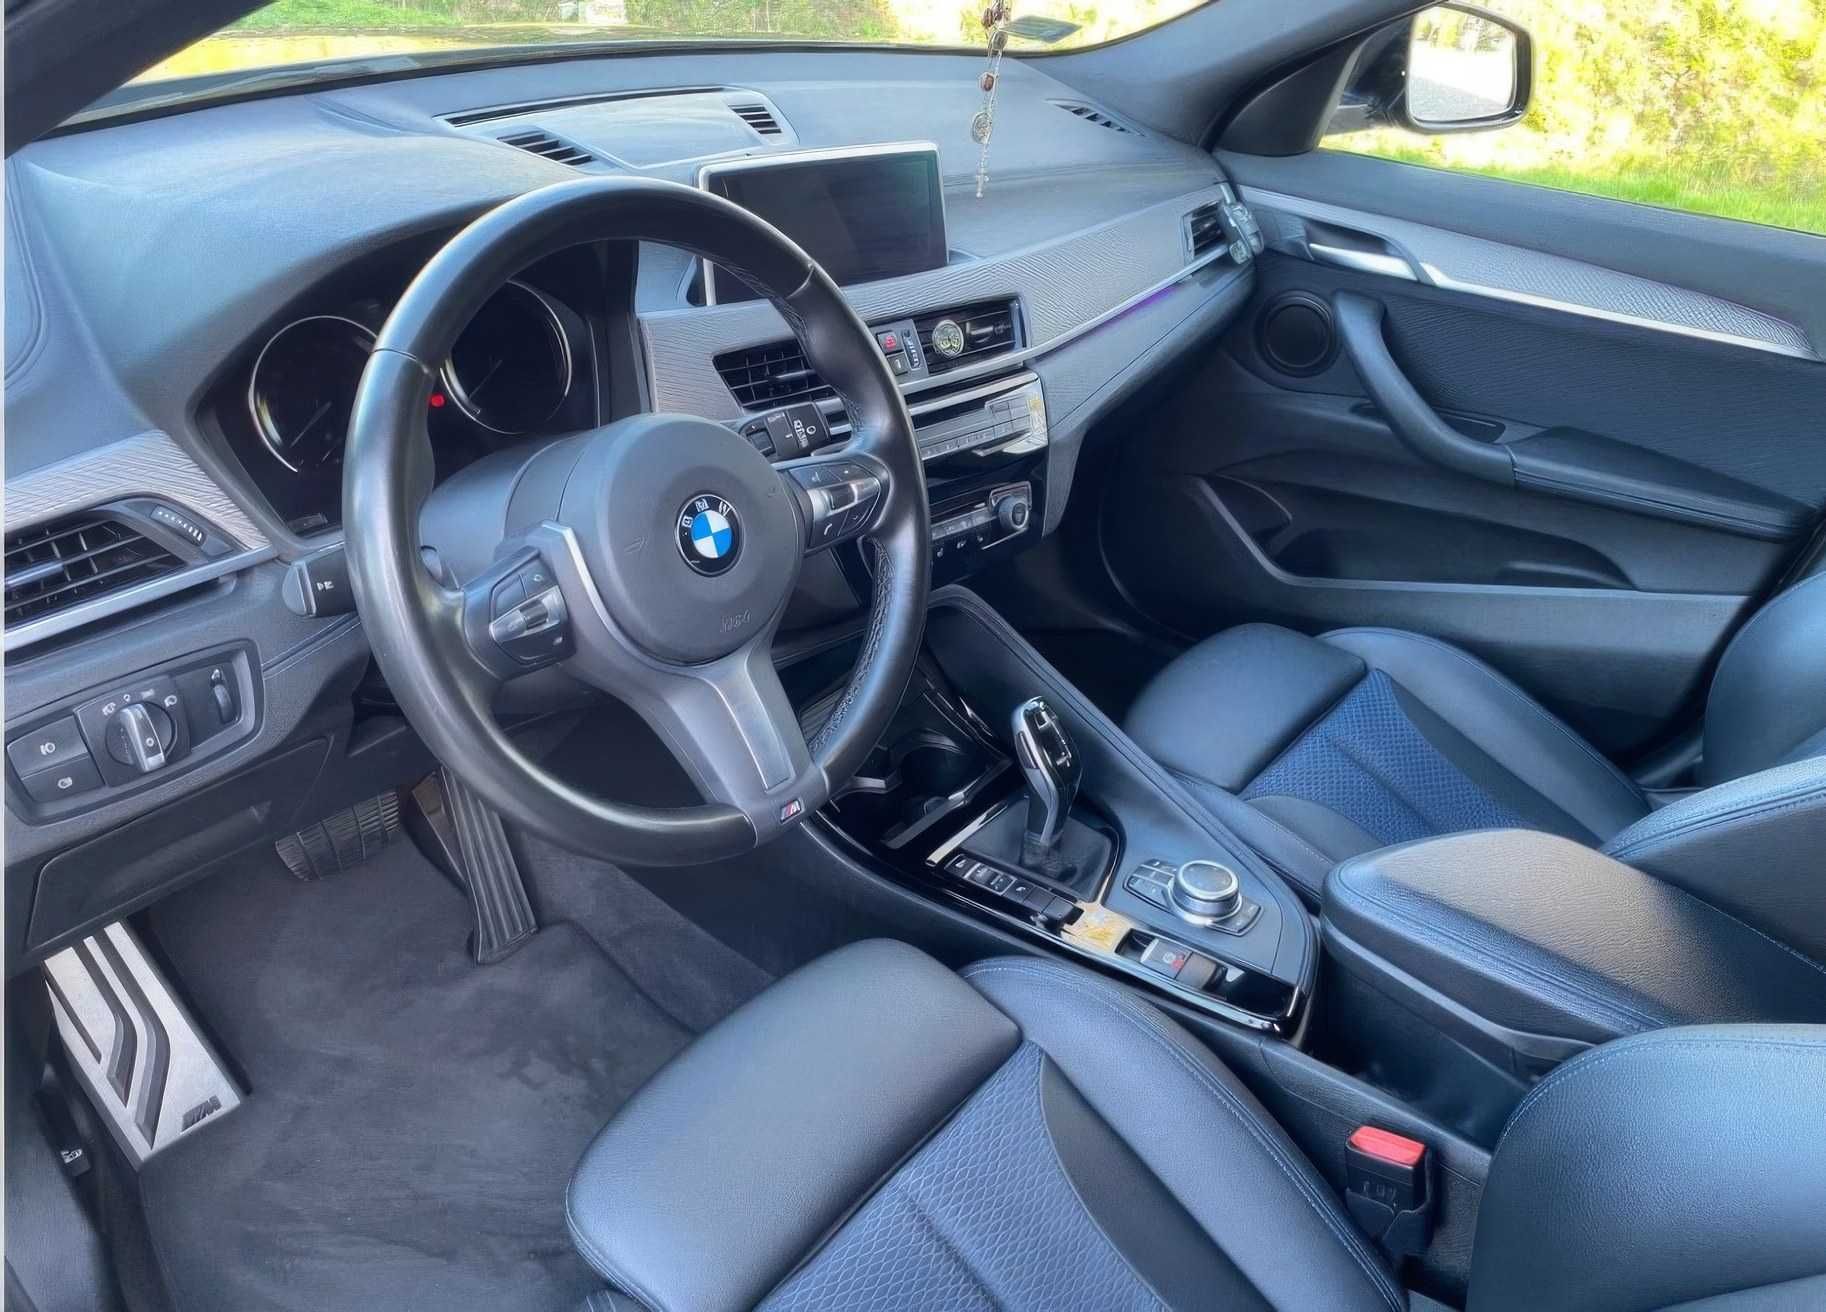 BMW    X2     2020